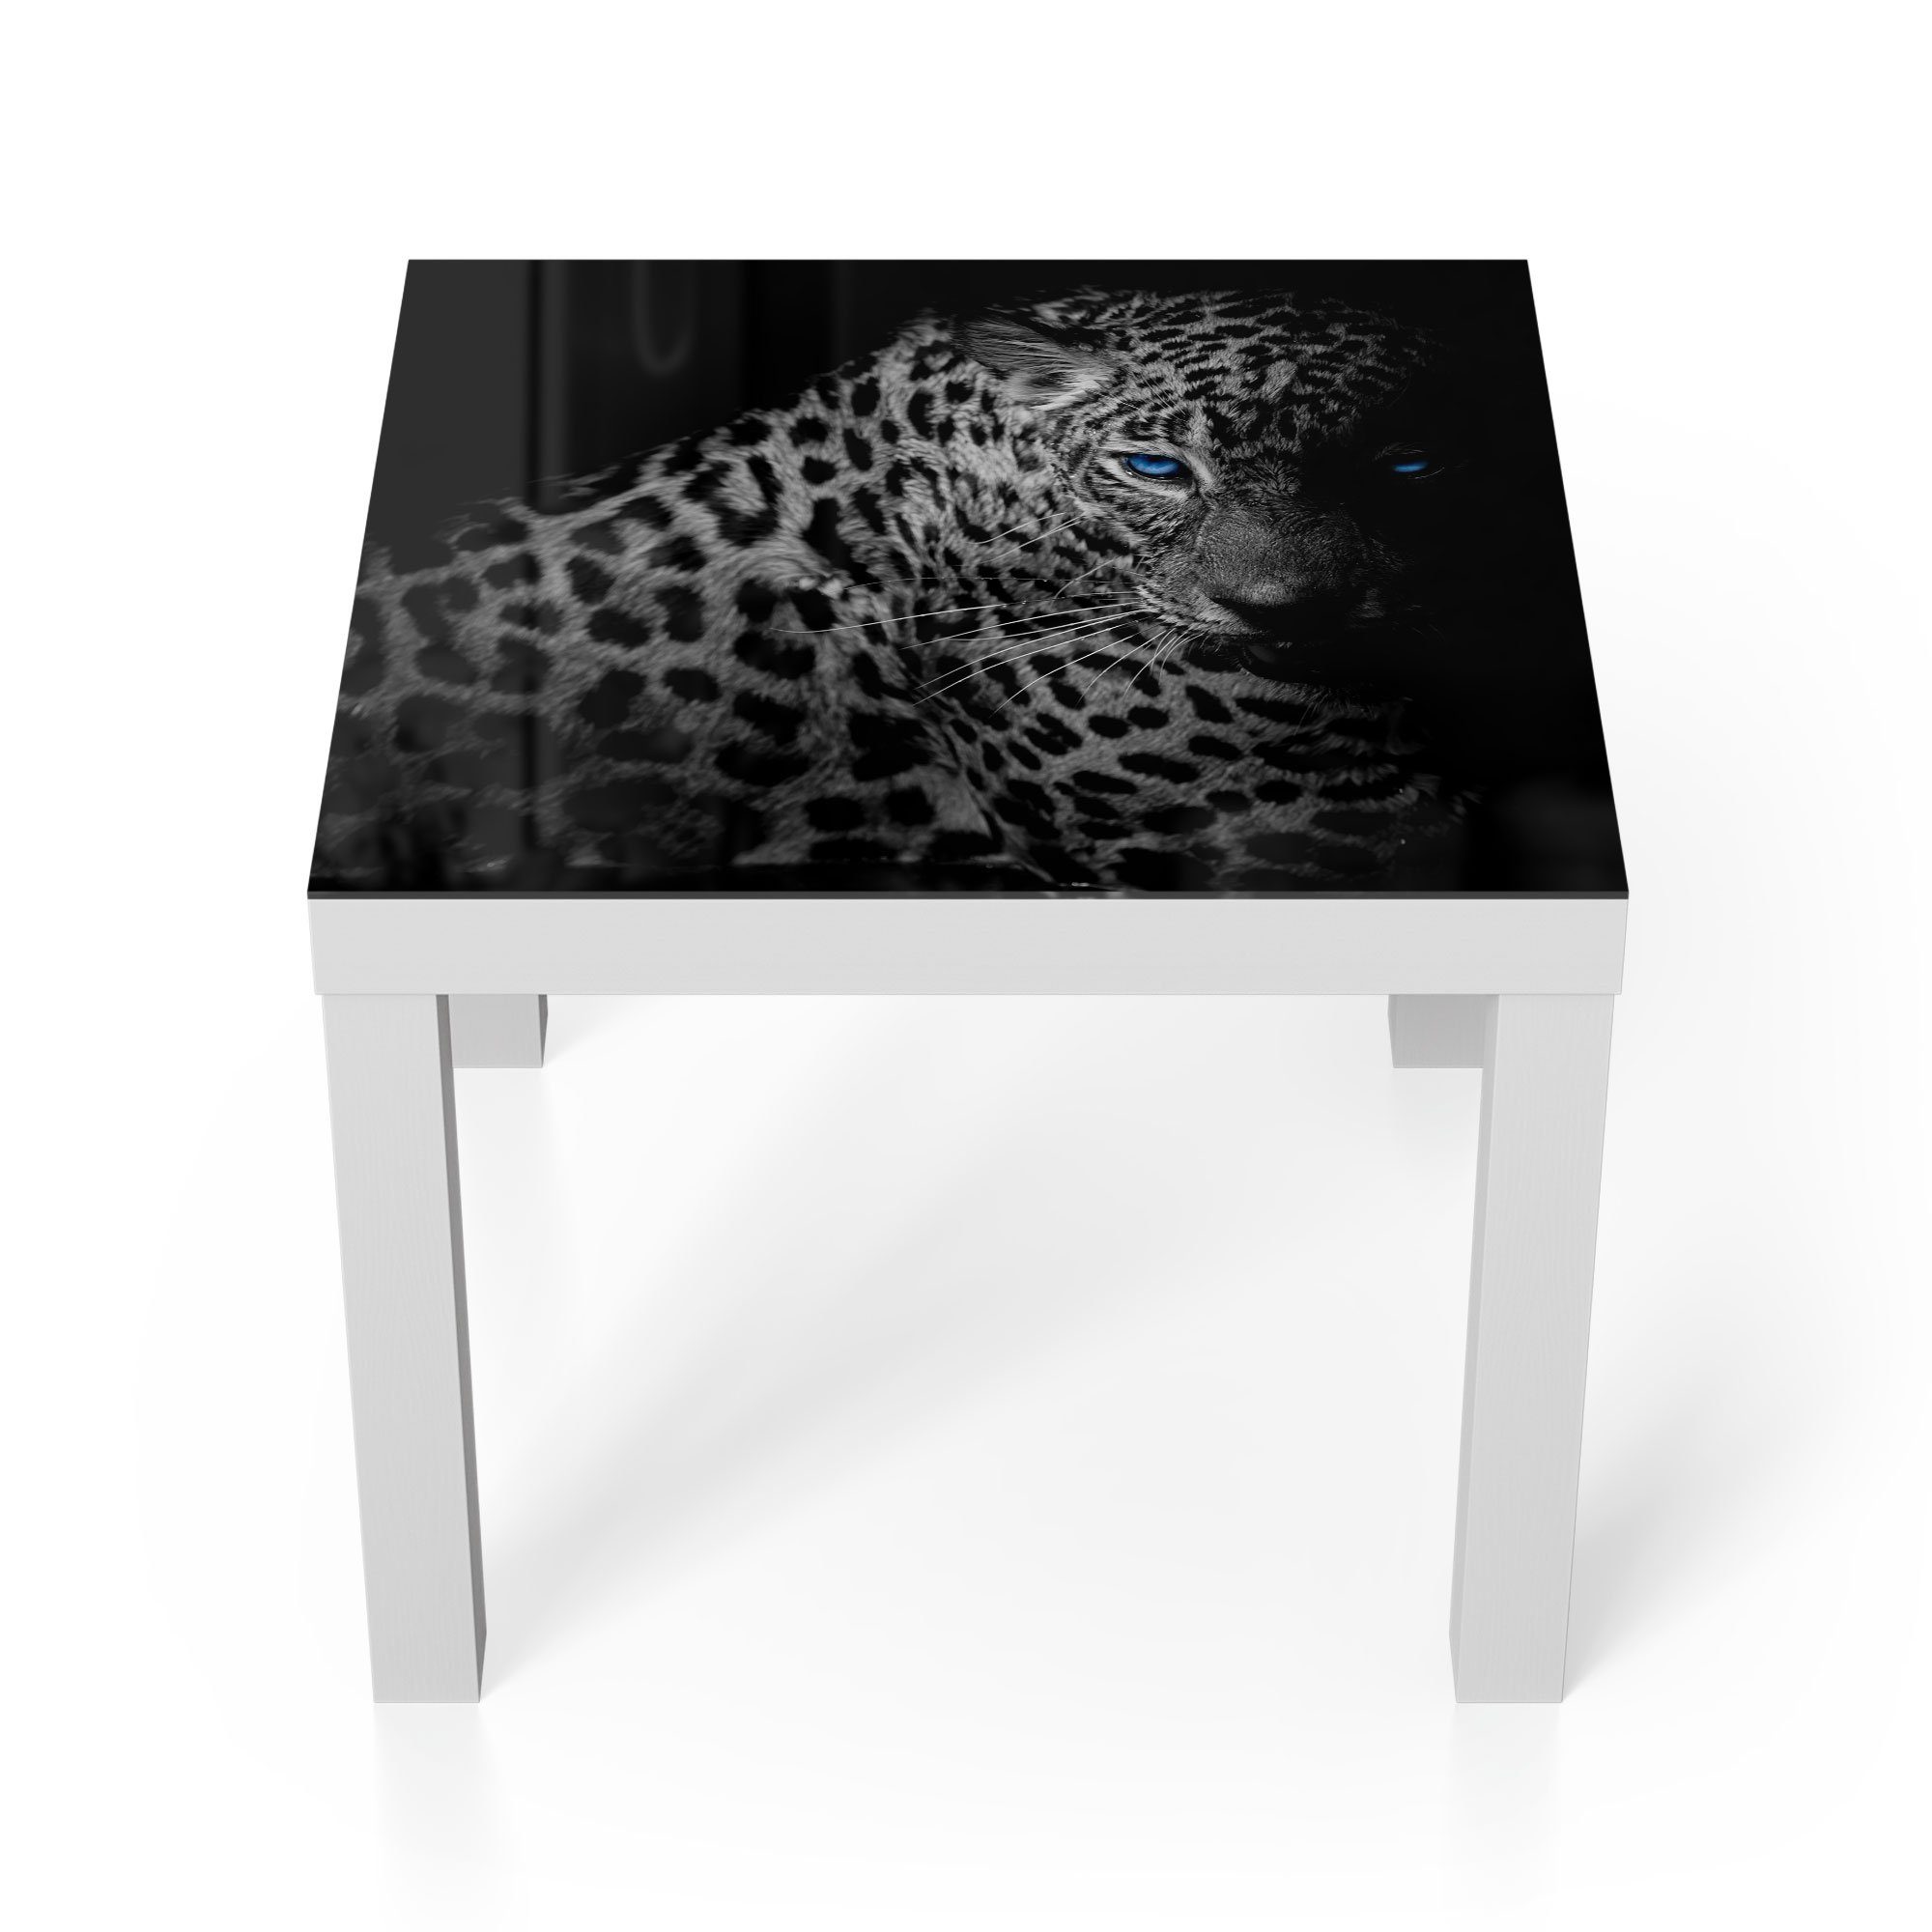 DEQORI Couchtisch 'Leopard mit blauen Augen', Glas Beistelltisch Glastisch modern Weiß